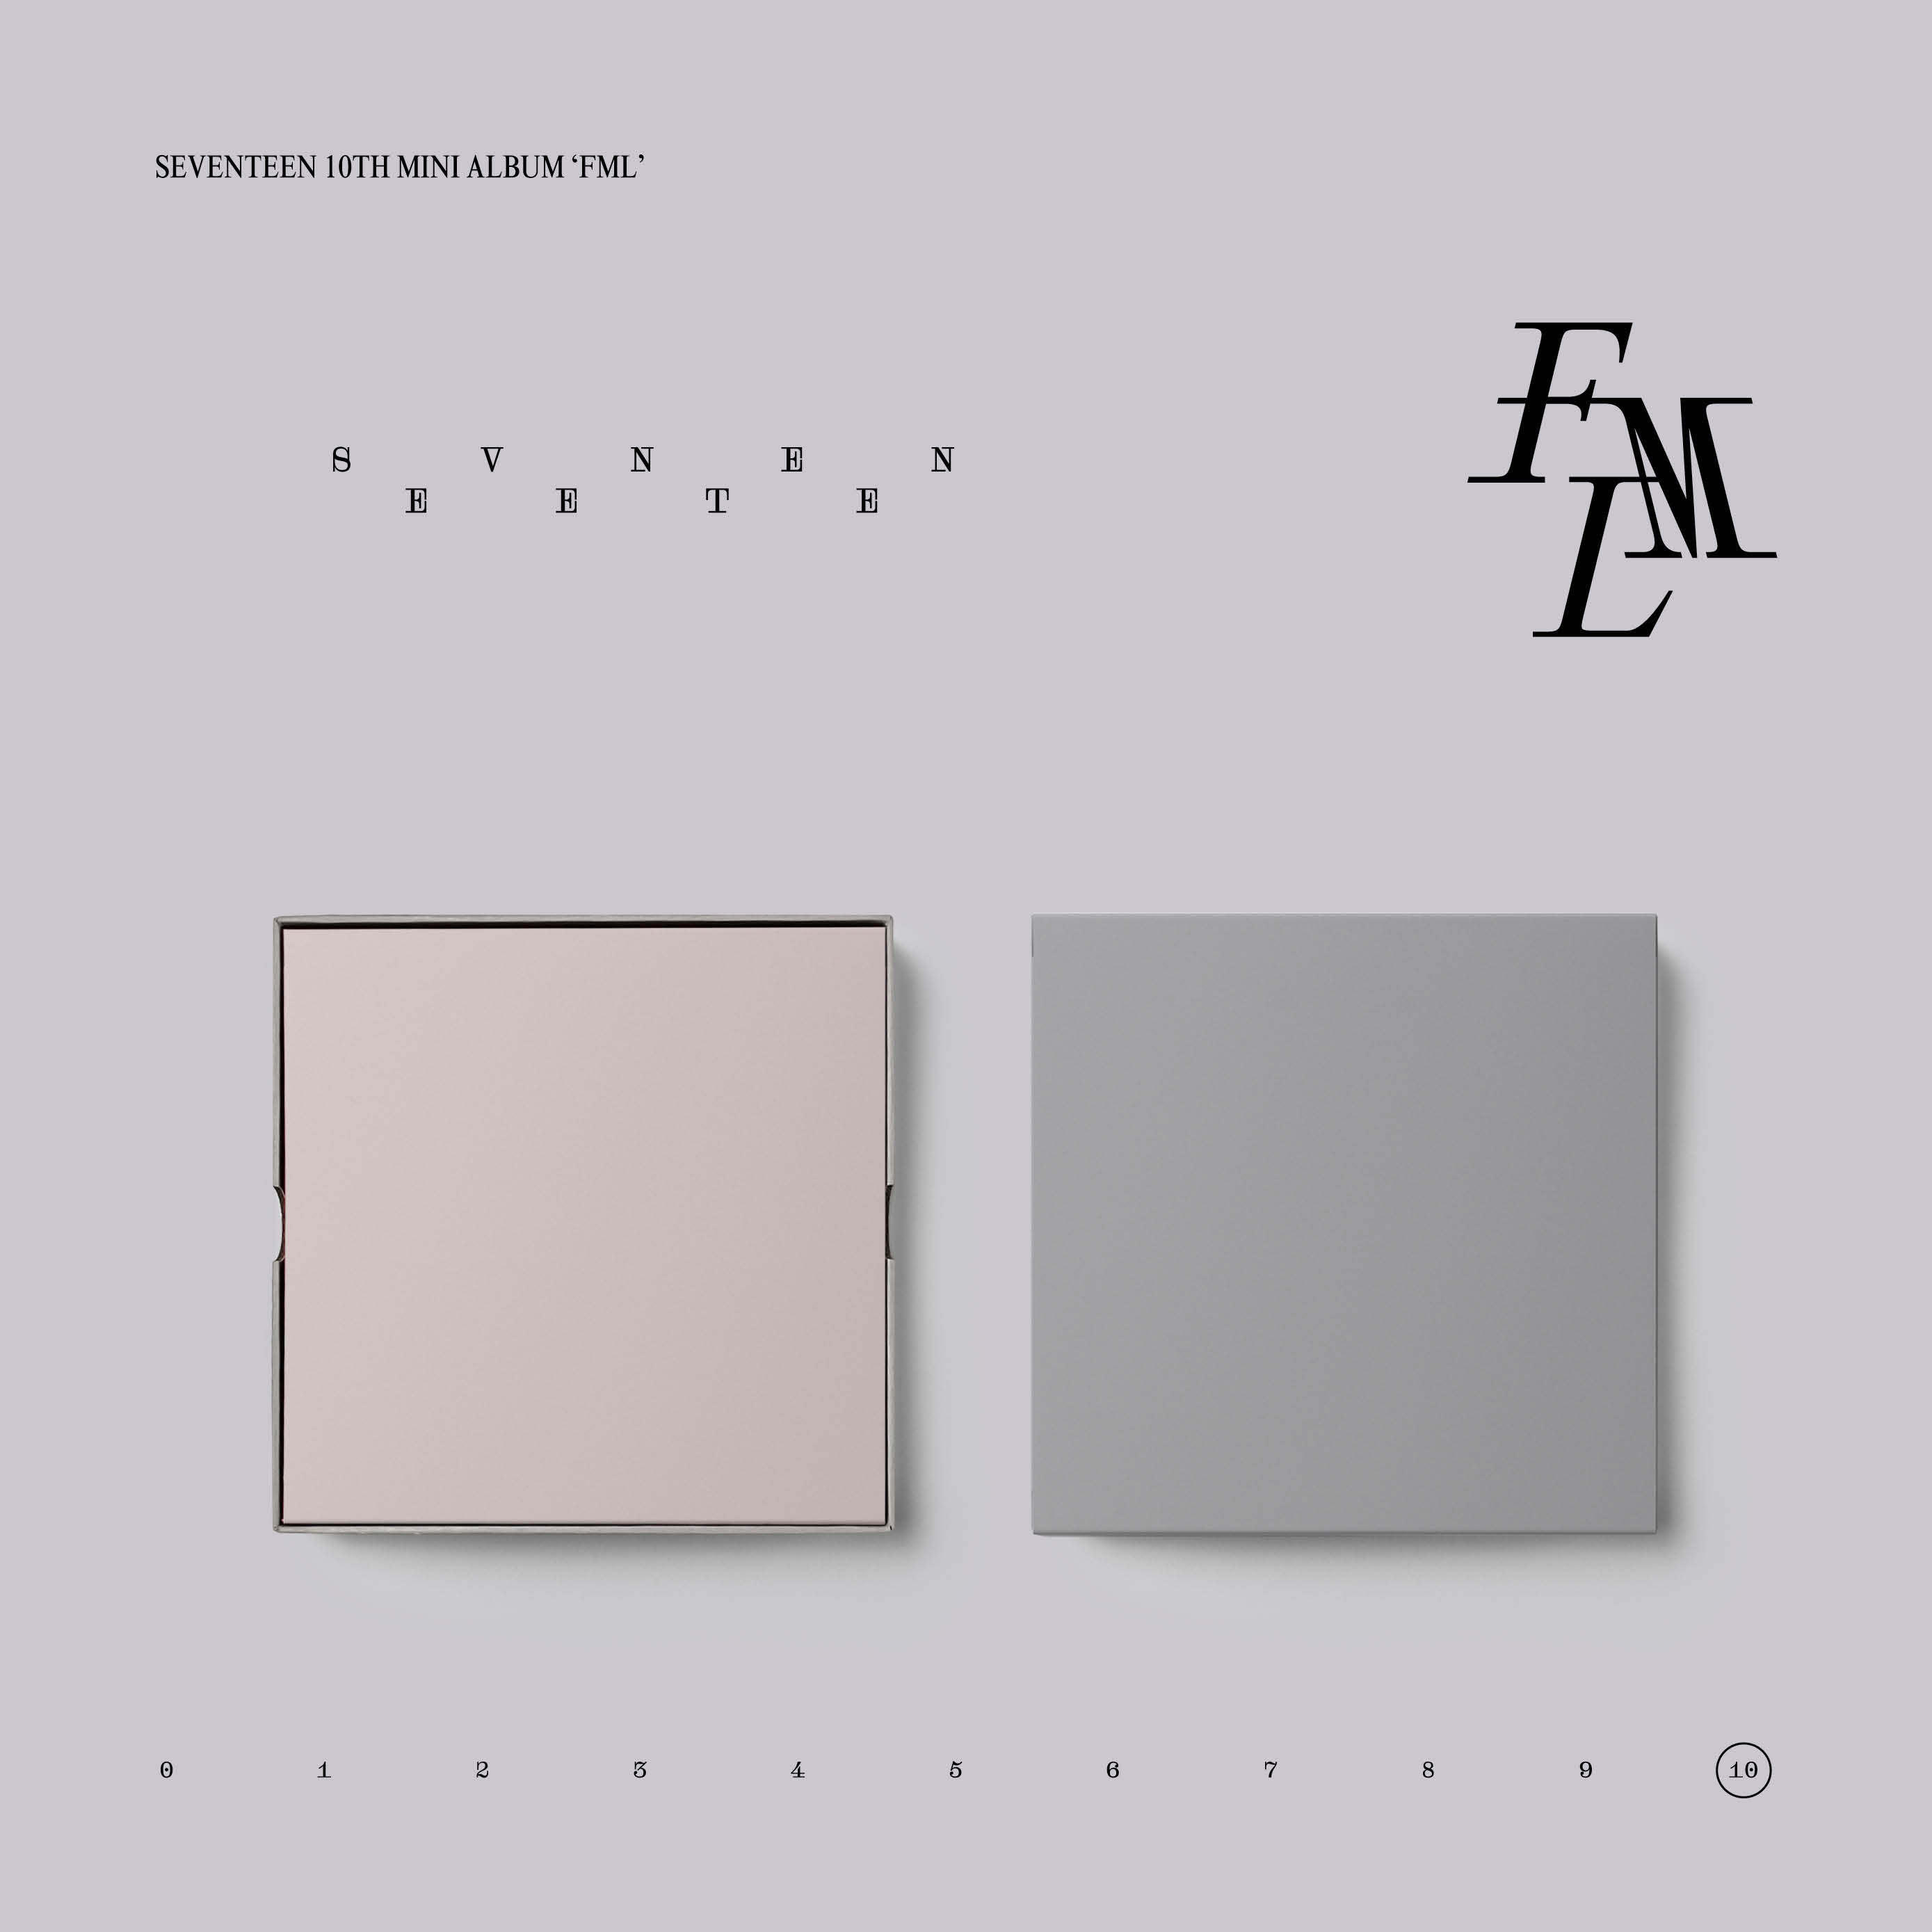 [拆卡专 小澈干脆面 无特典] SEVENTEEN - 10th Mini Album [FML] (CARAT Ver.)_崔胜澈_SCoupsBar